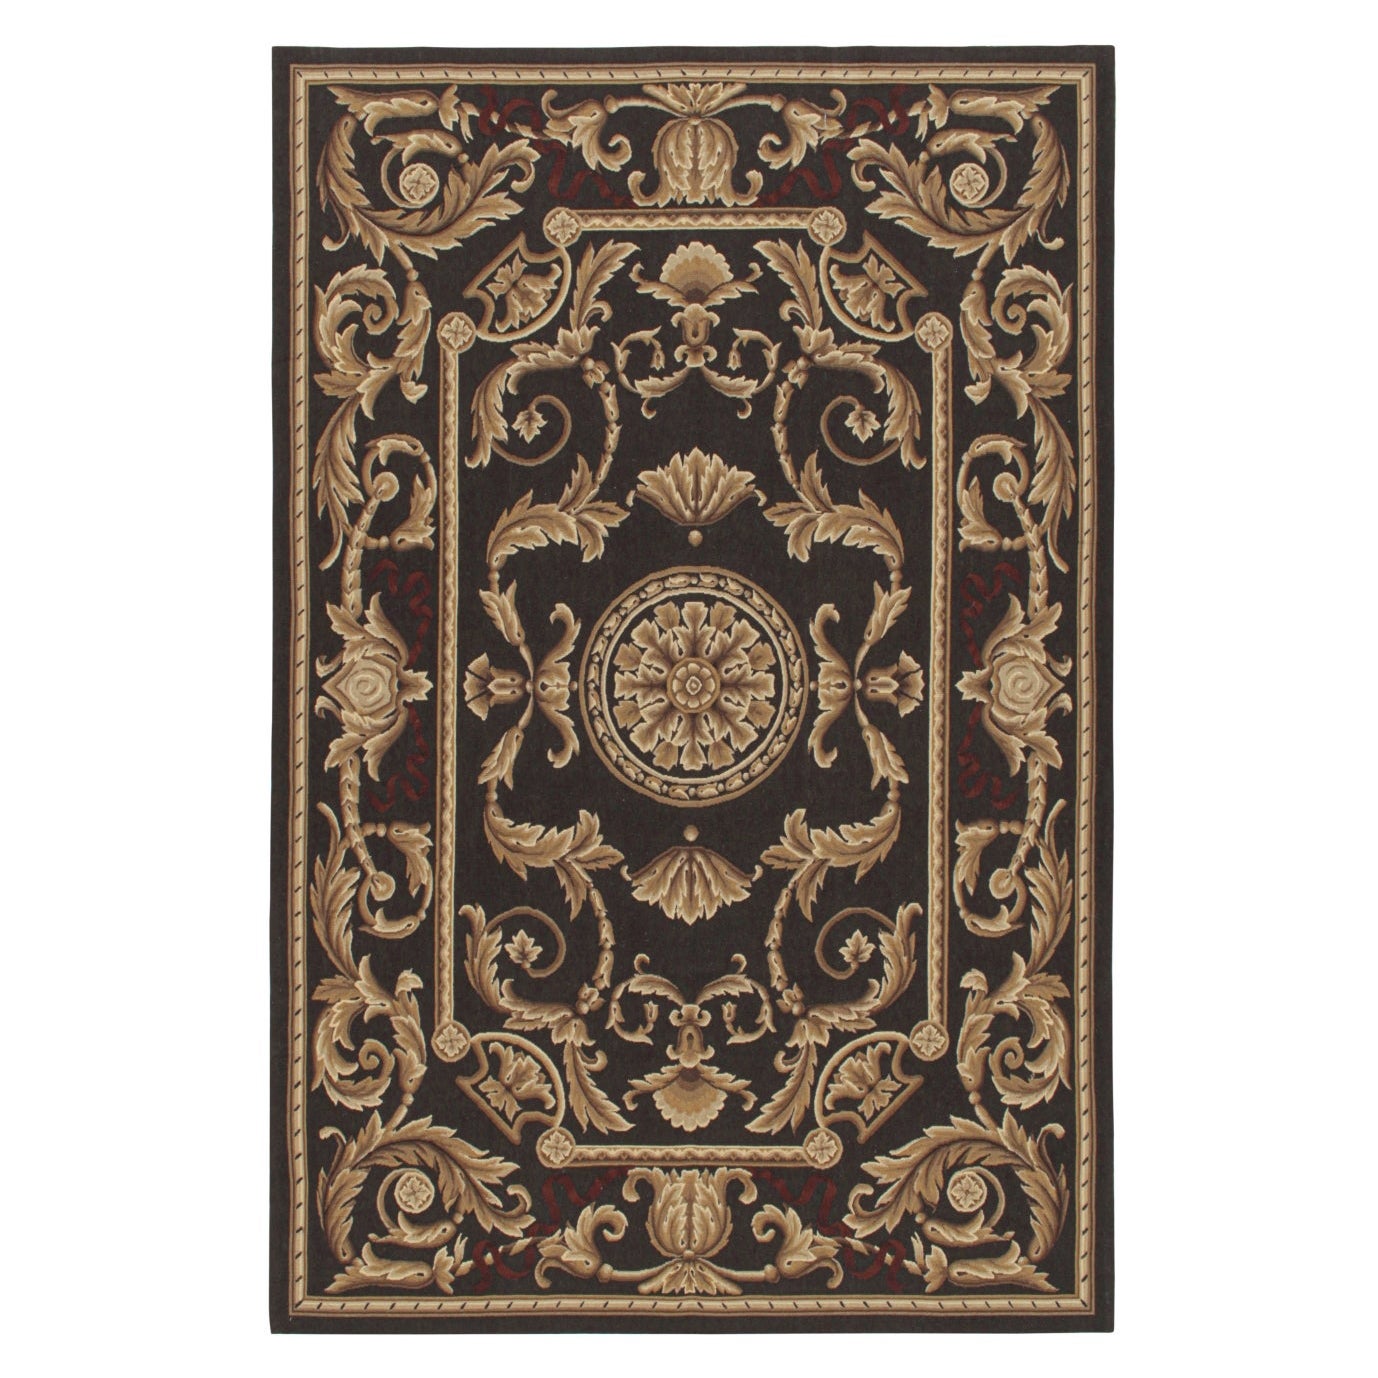 Flachgewebe im Aubusson-Stil von Rug & Kilim in Braun mit Medaillon und floralen Mustern